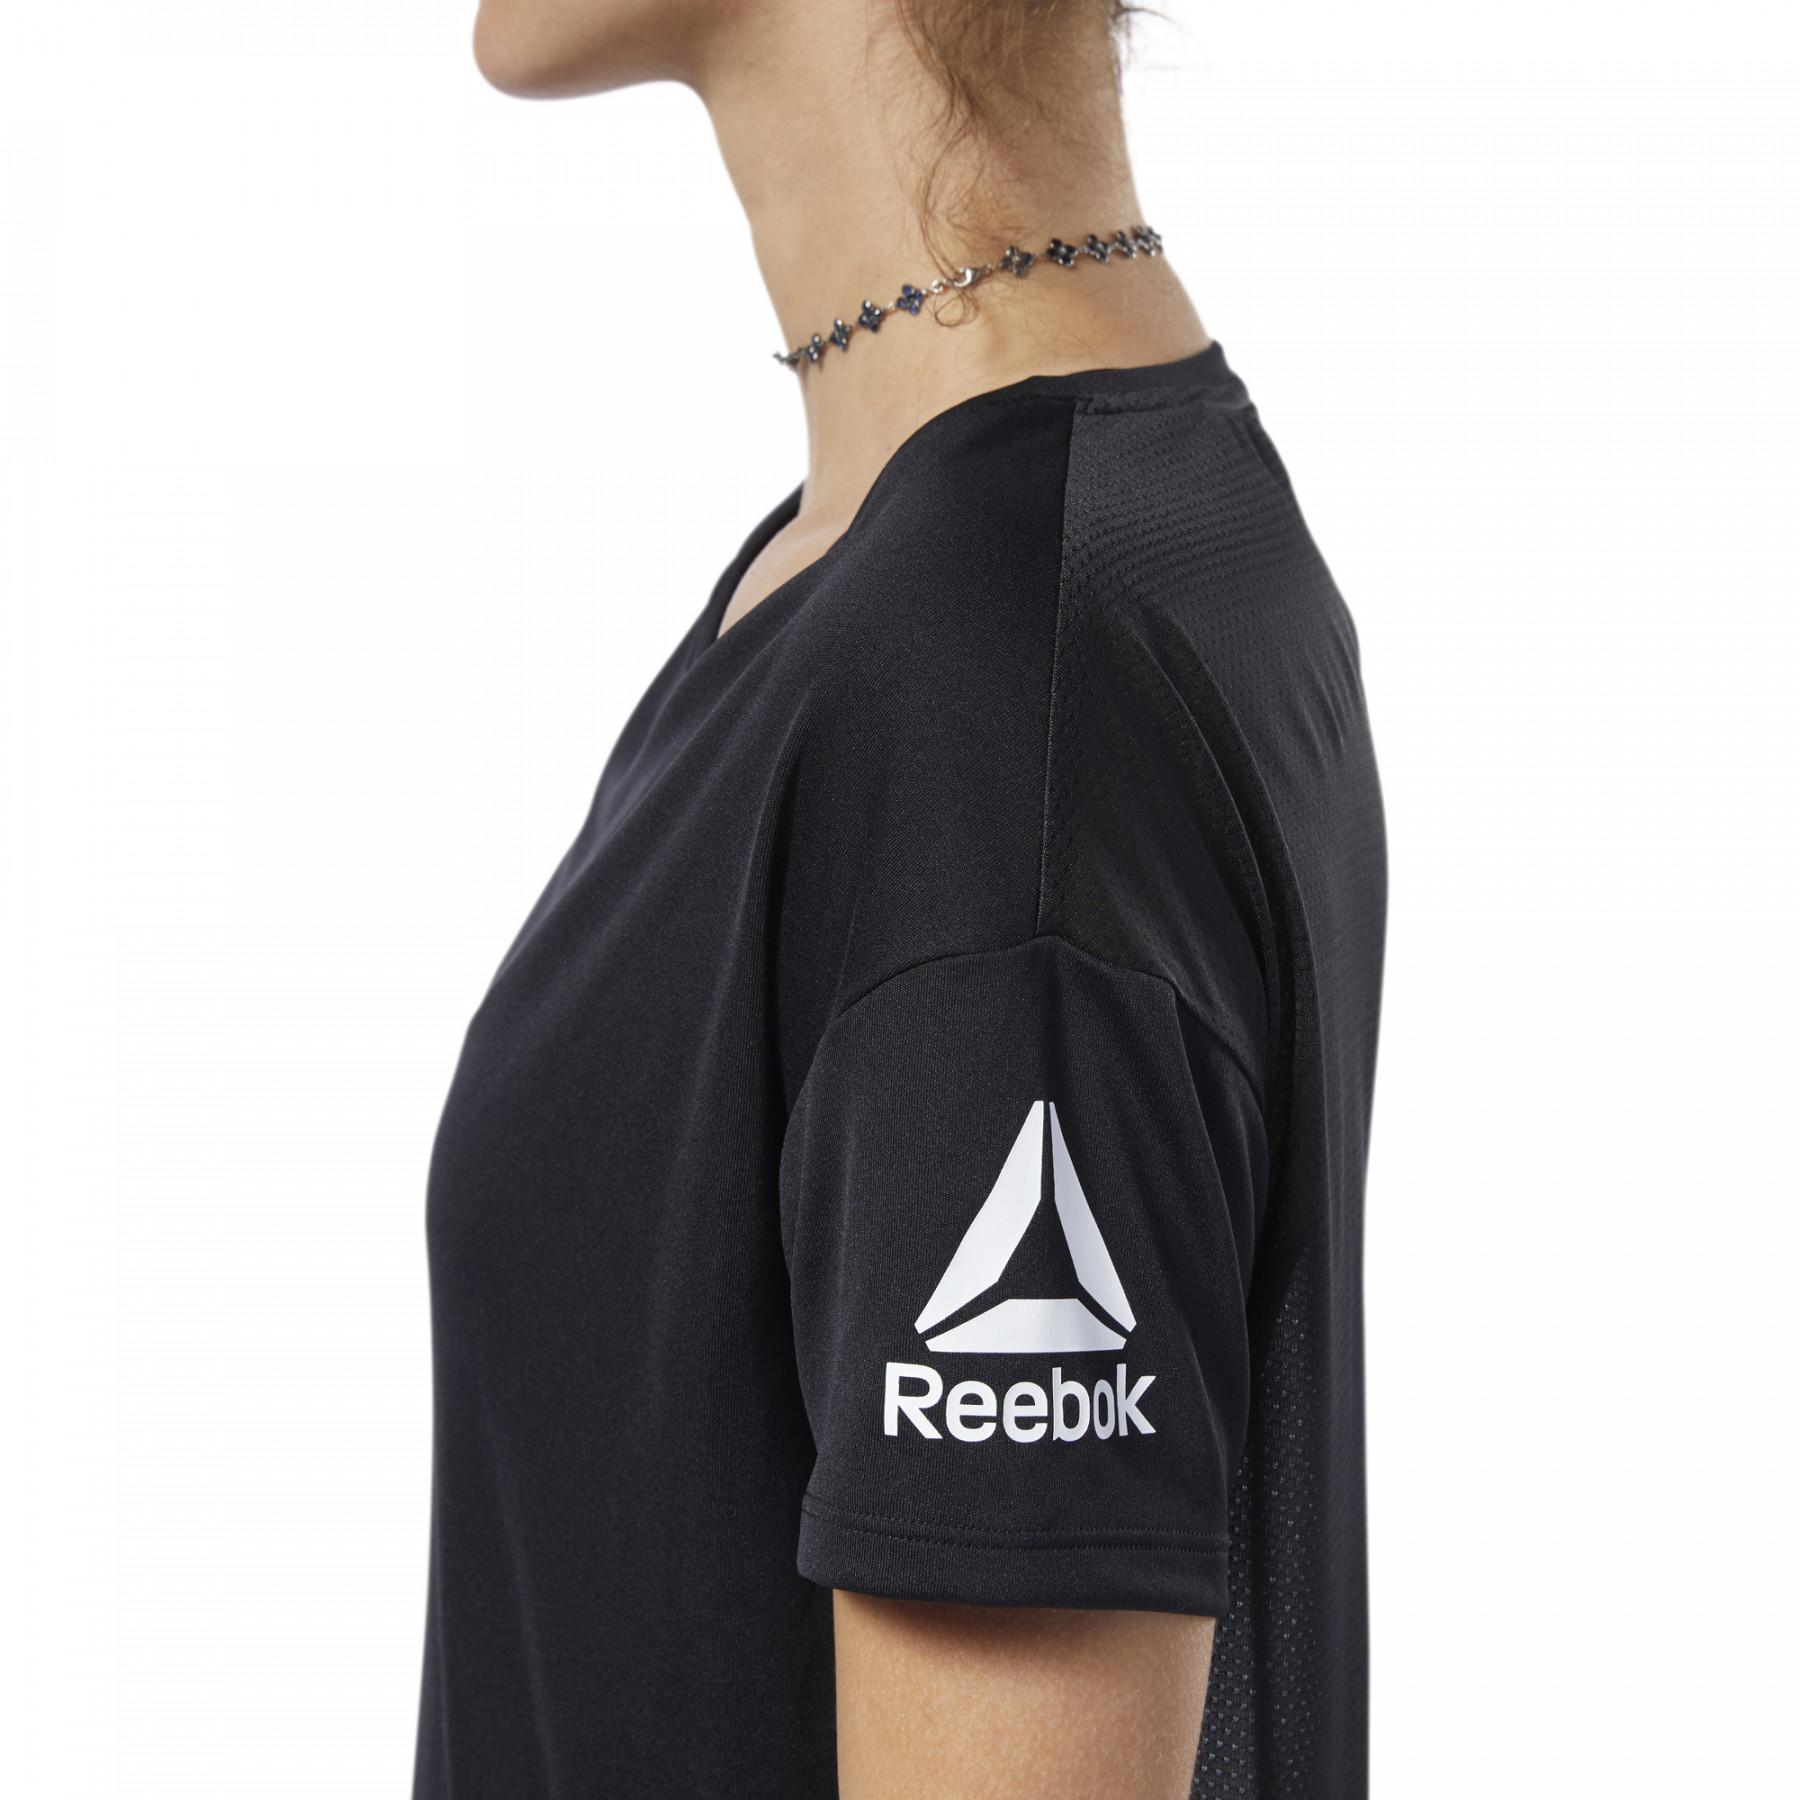 Camiseta mujer Reebok Workout